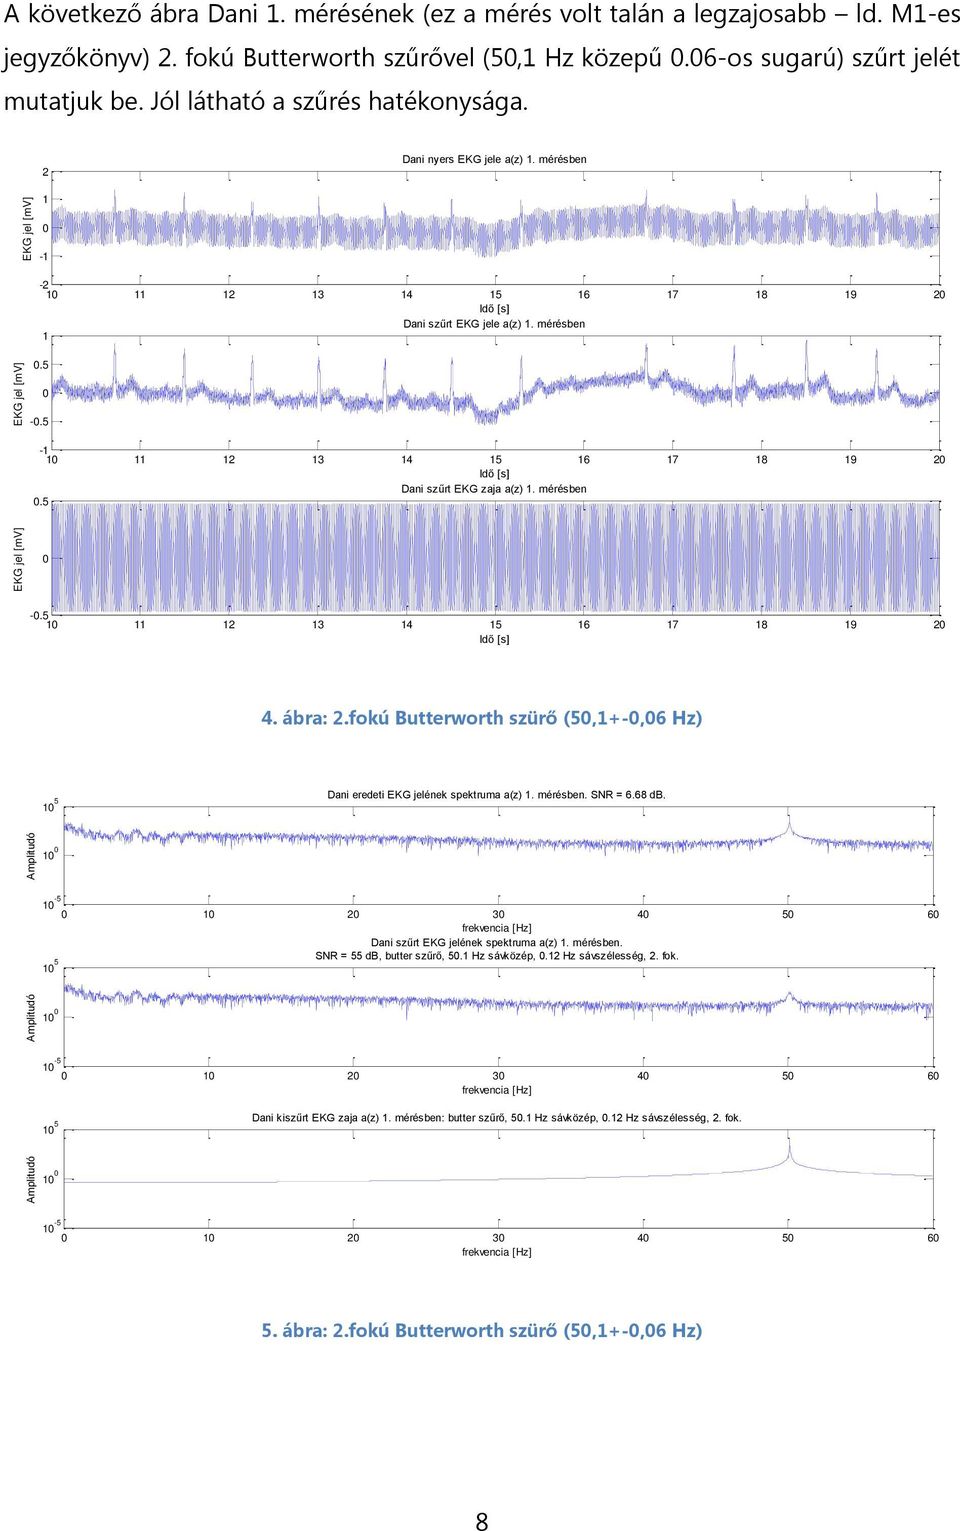 5-2 3 4 5 6 7 8 9 2 Dani szűrt EKG zaja a(z). mérésben.5 -.5 2 3 4 5 6 7 8 9 2 4. ábra: 2.fokú Butterworth szürő (5,+-,6 Hz) 5 Dani eredeti EKG jelének spektruma a(z). mérésben. SNR = 6.68 db.